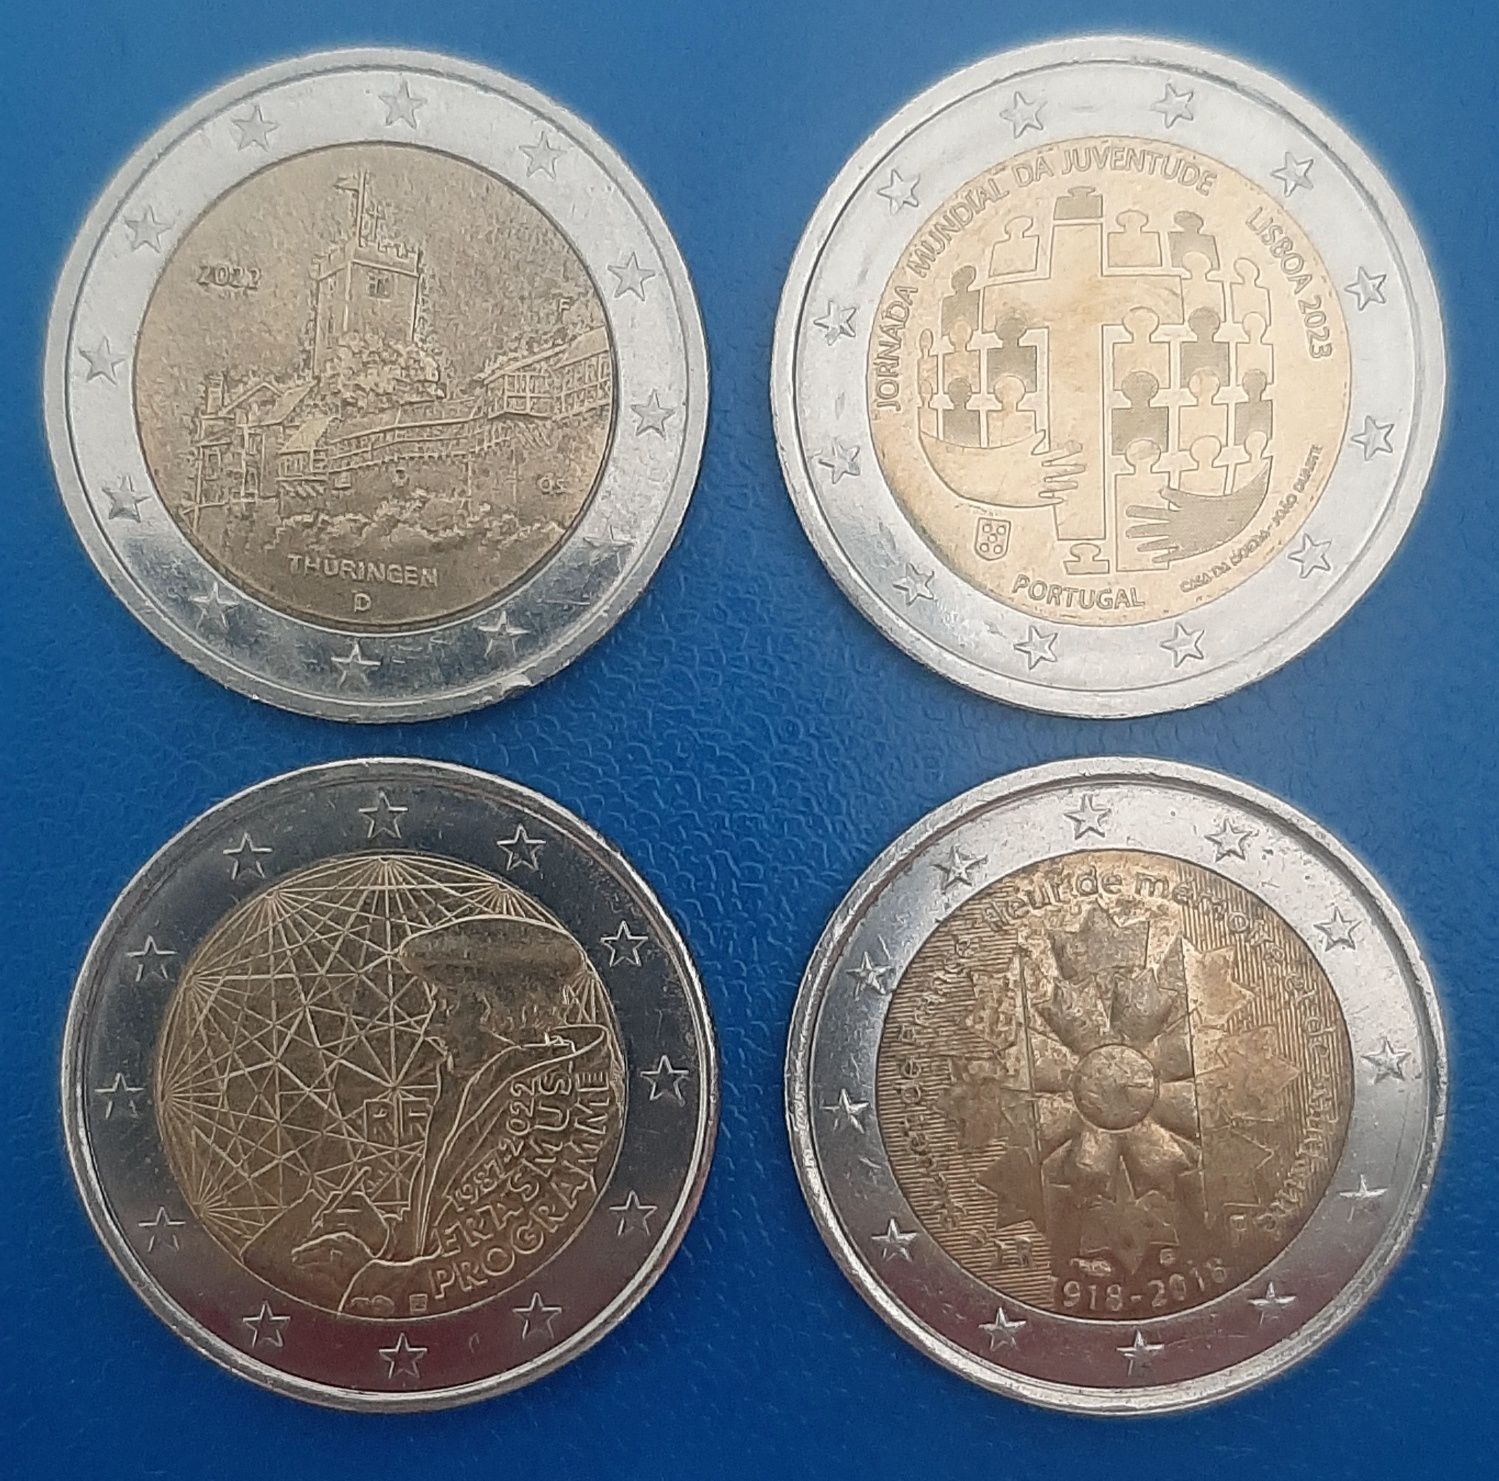 2 euros comemorativas circuladas